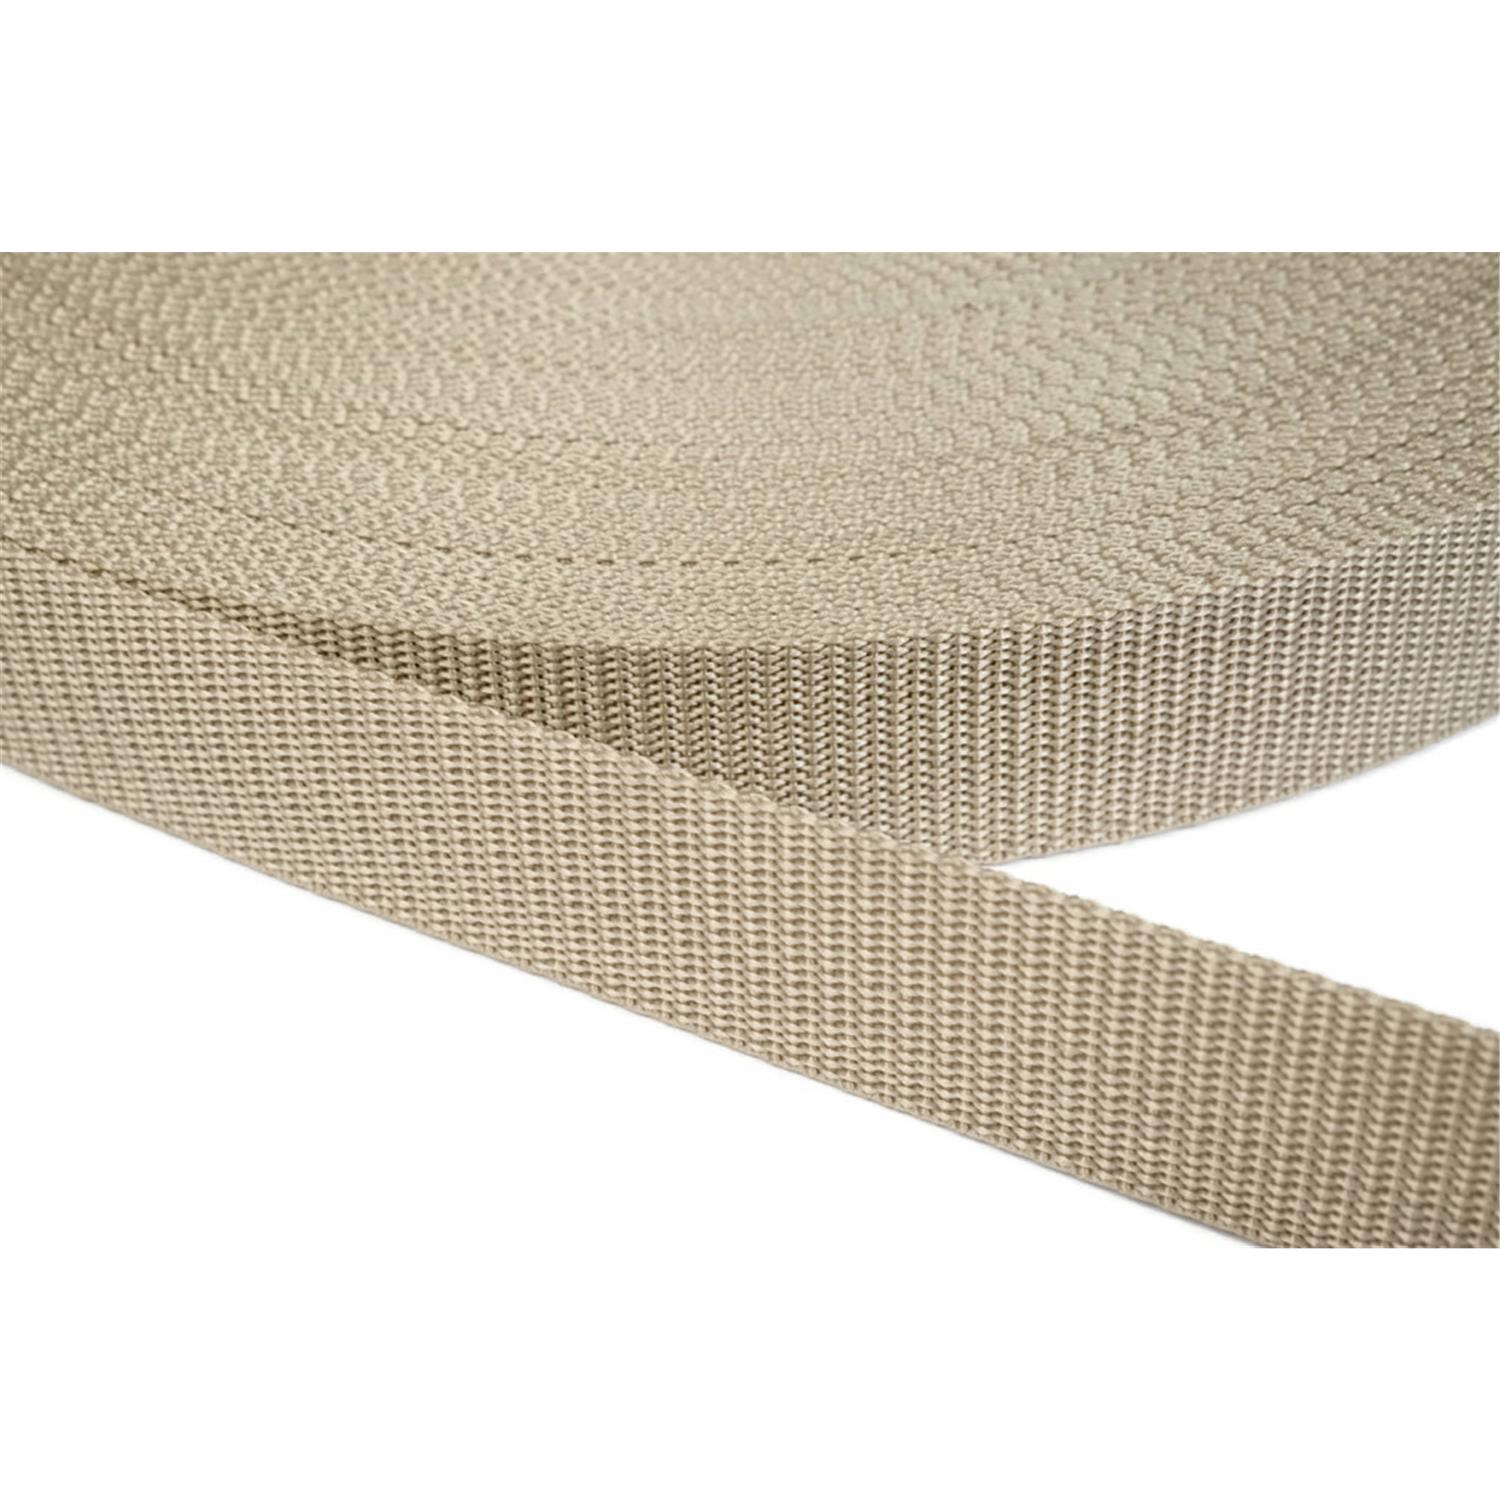 Gurtband 20mm breit aus Polypropylen in 41 Farben 03 - beige 50 Meter